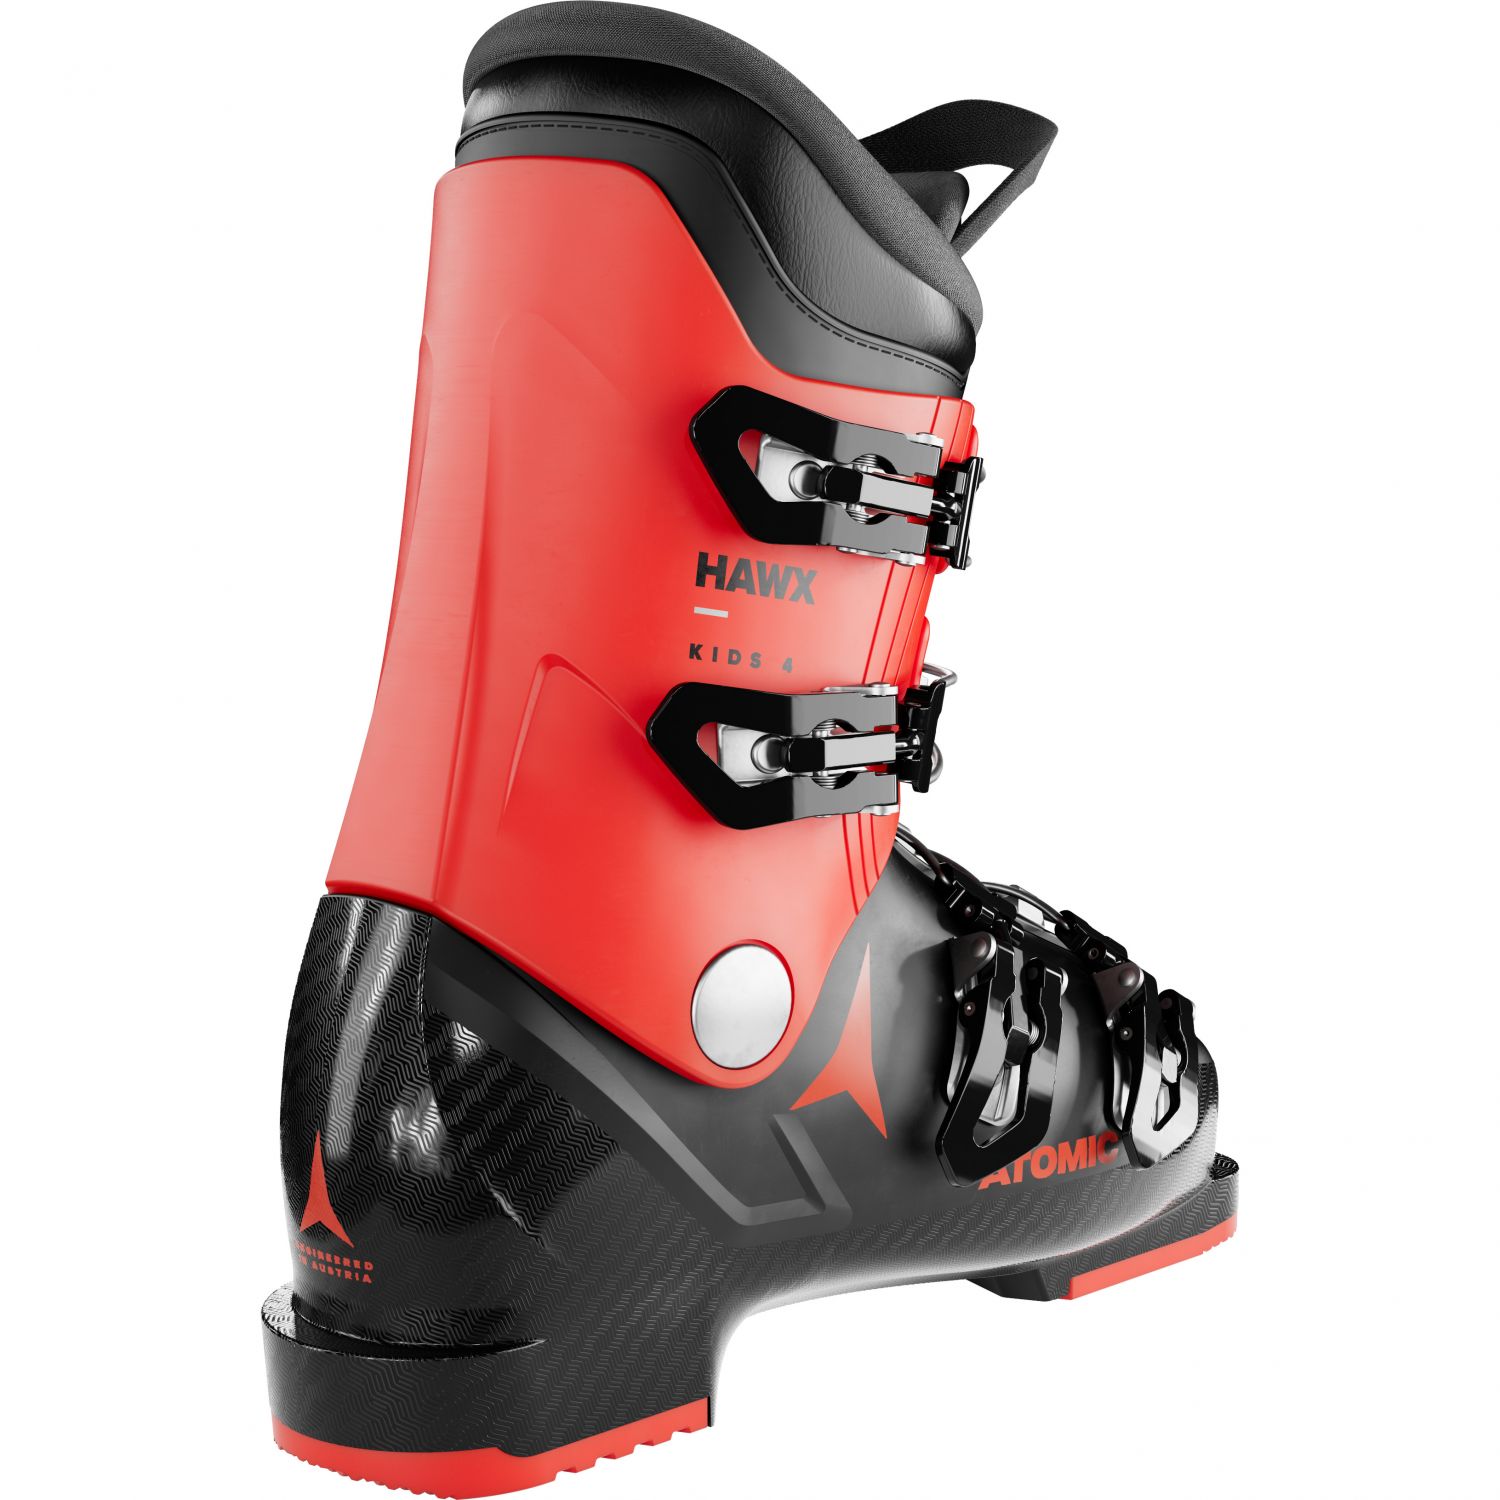 Atomic Hawx Kids 4, ski boots, junior, black/red